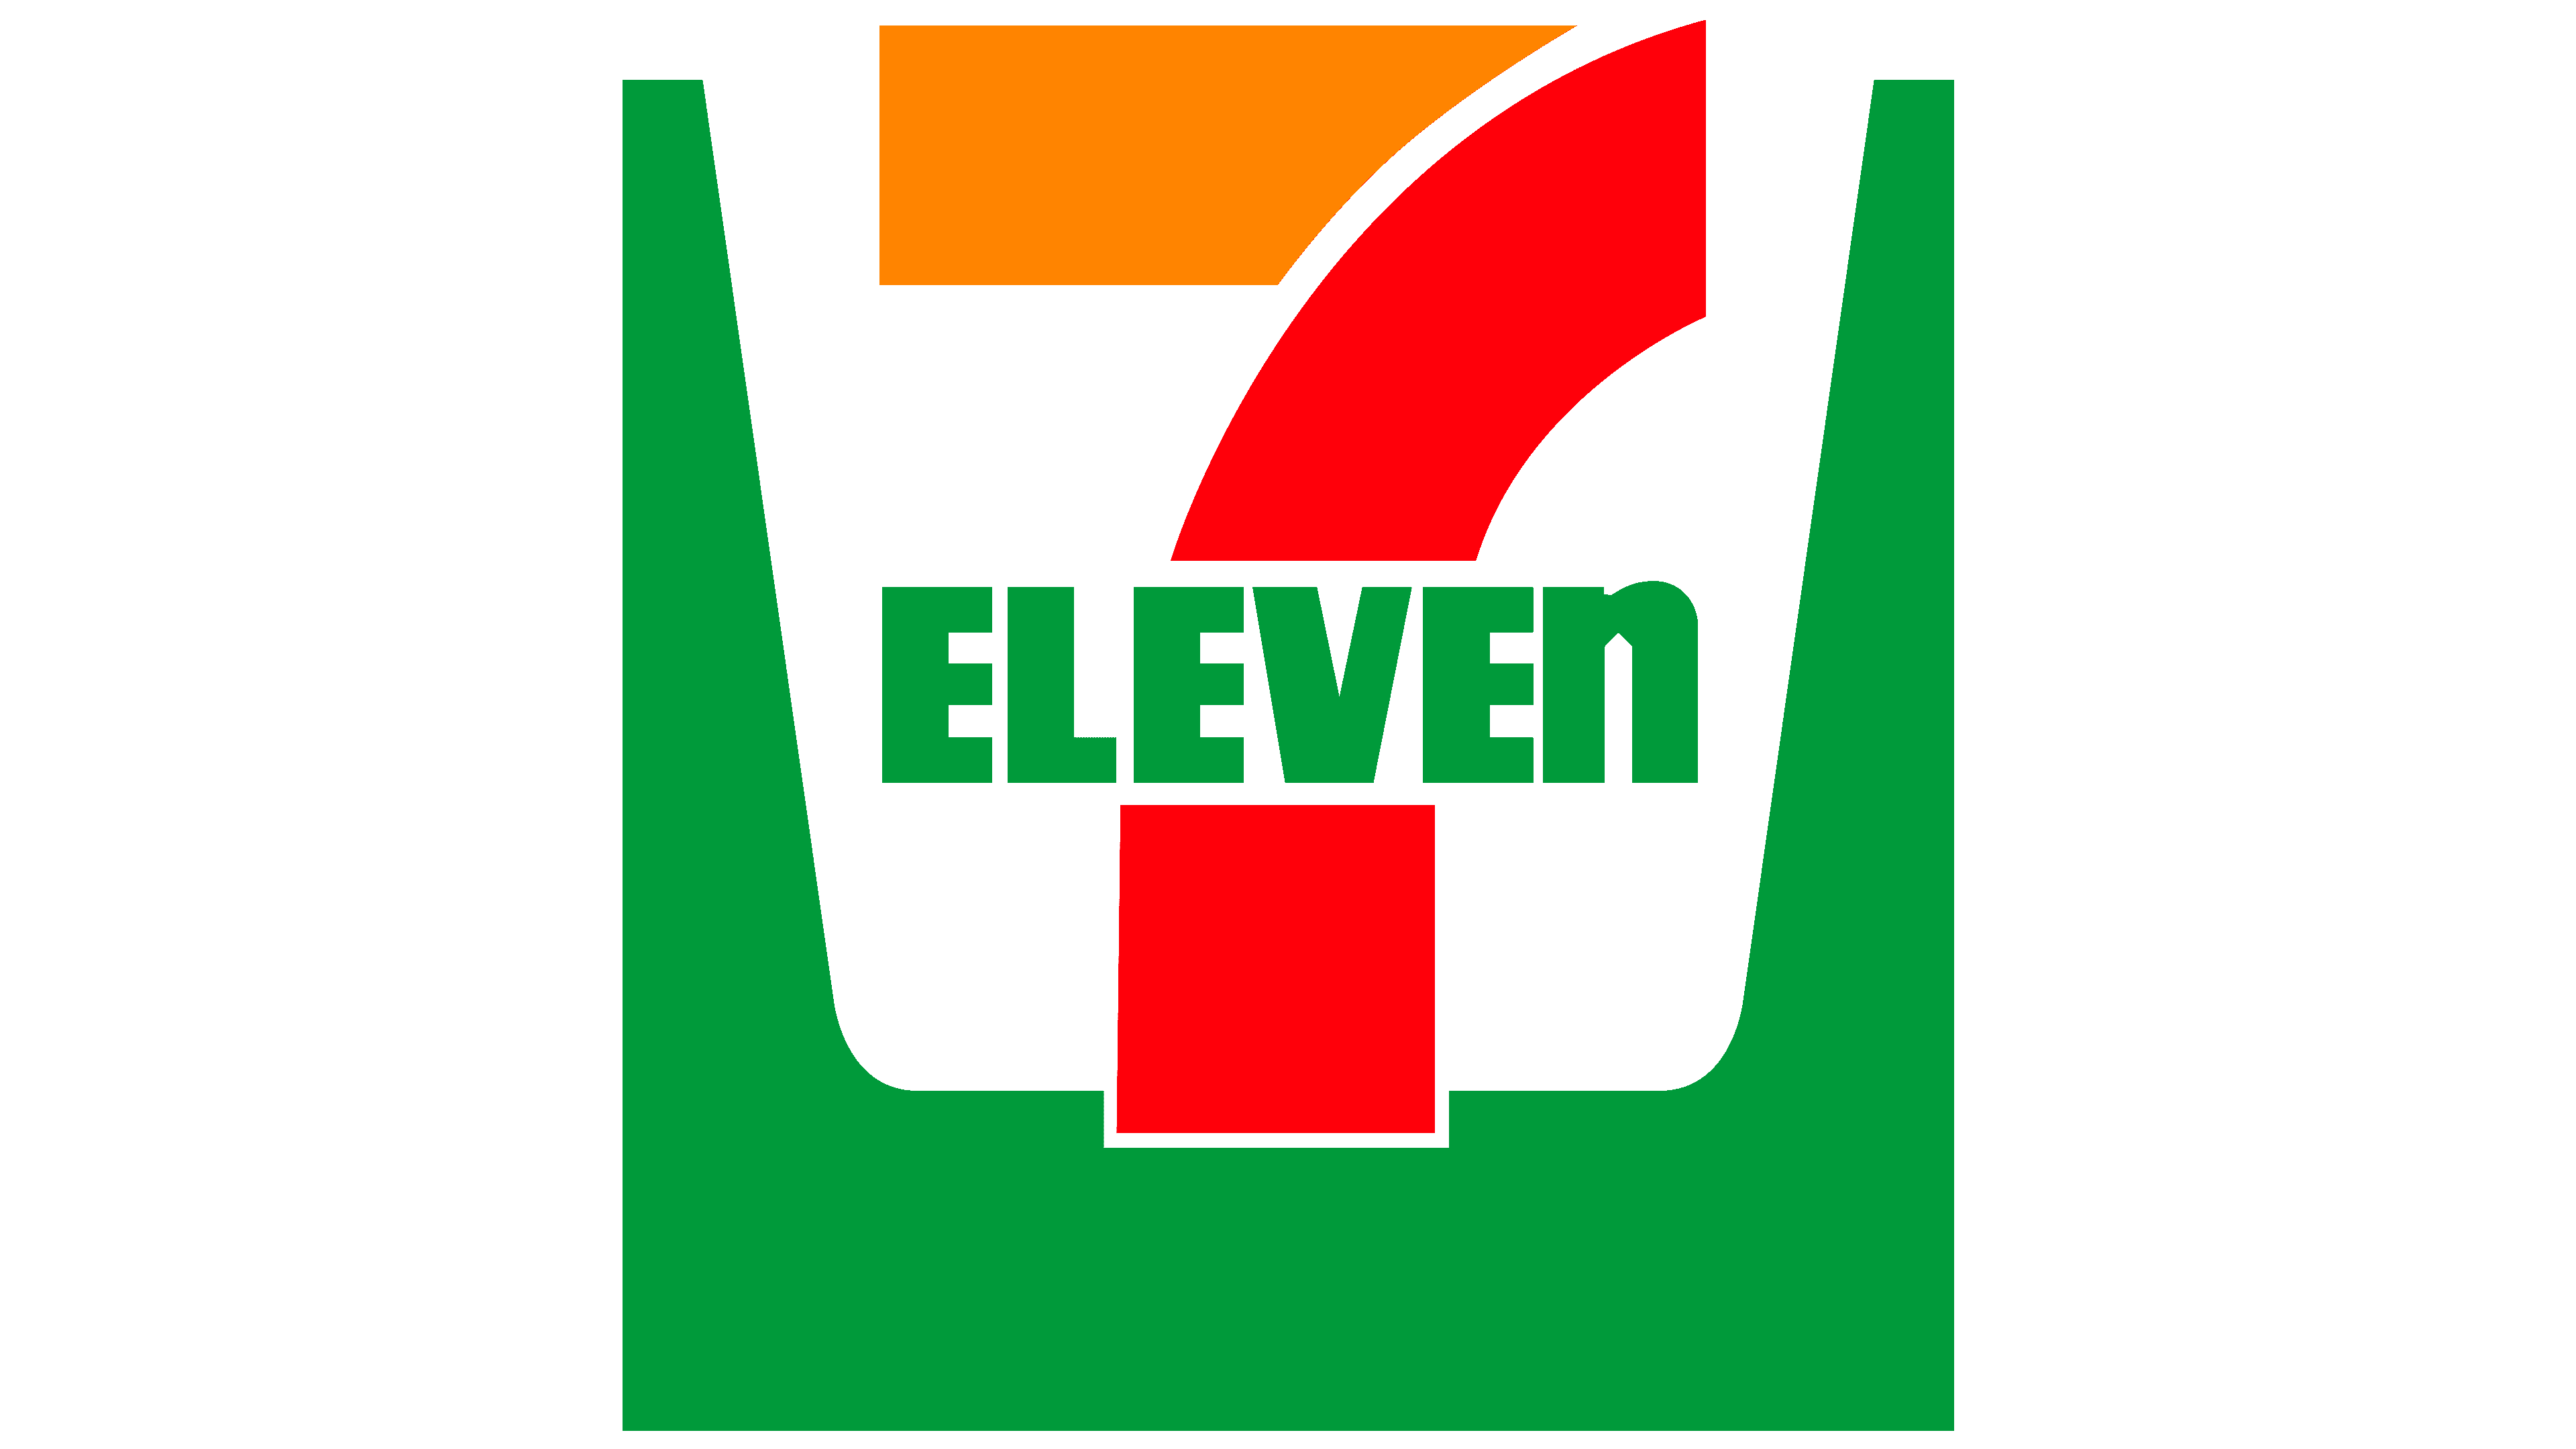 7 Eleven Logo Significado Del Logotipo Png Vector Images And Photos ...